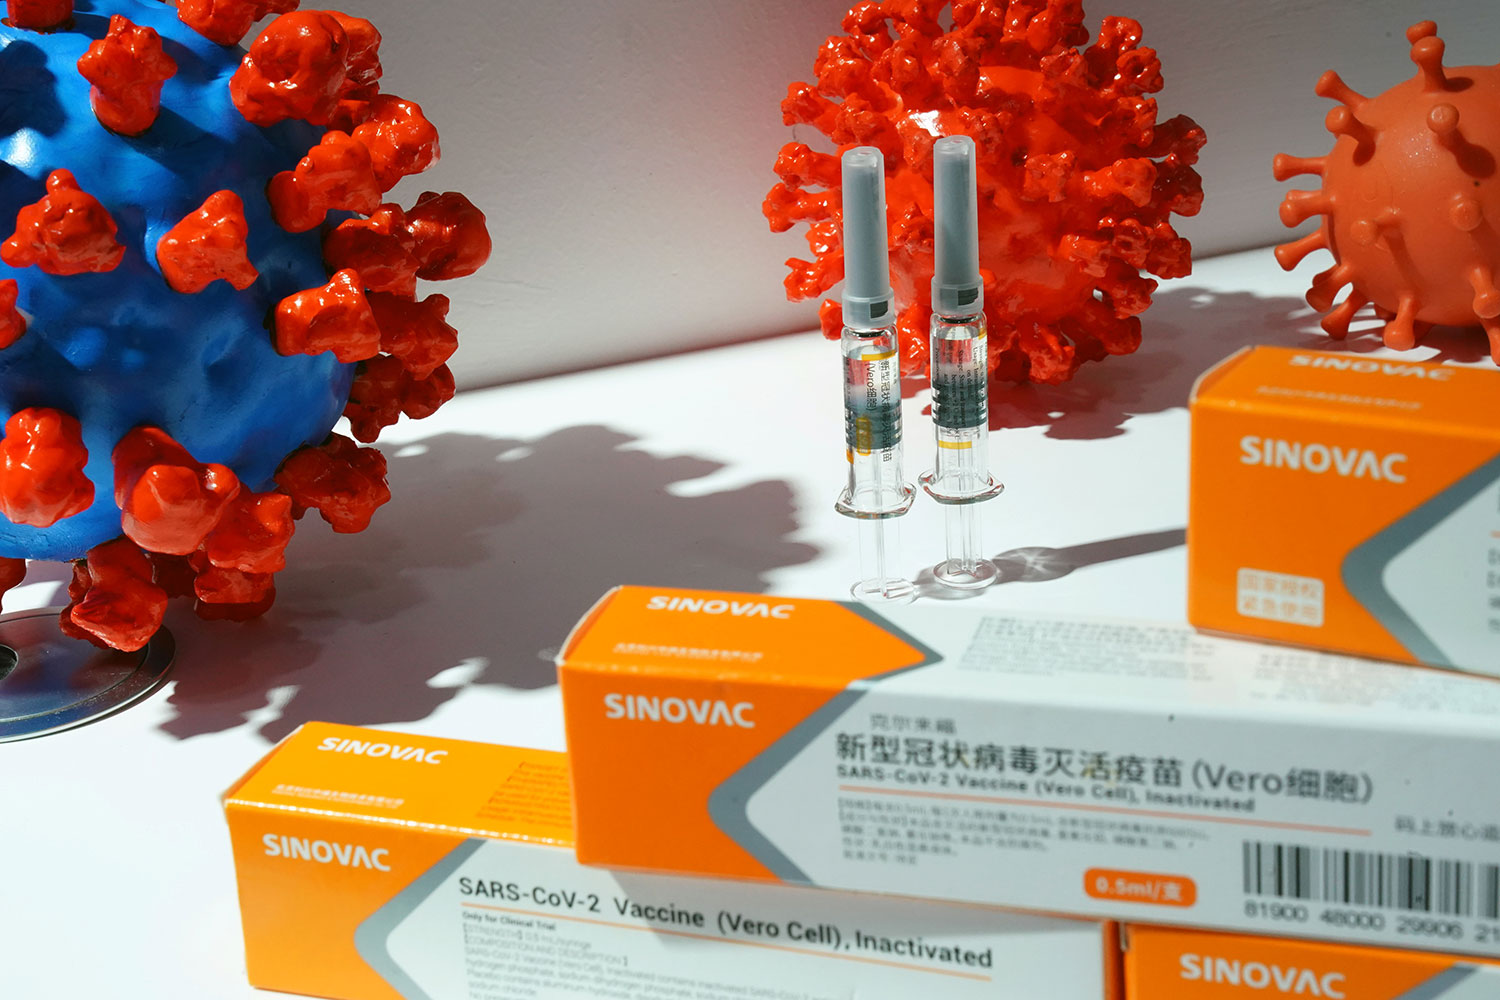 中国查获假新冠疫苗近六万支 假疫苗已在境外传播